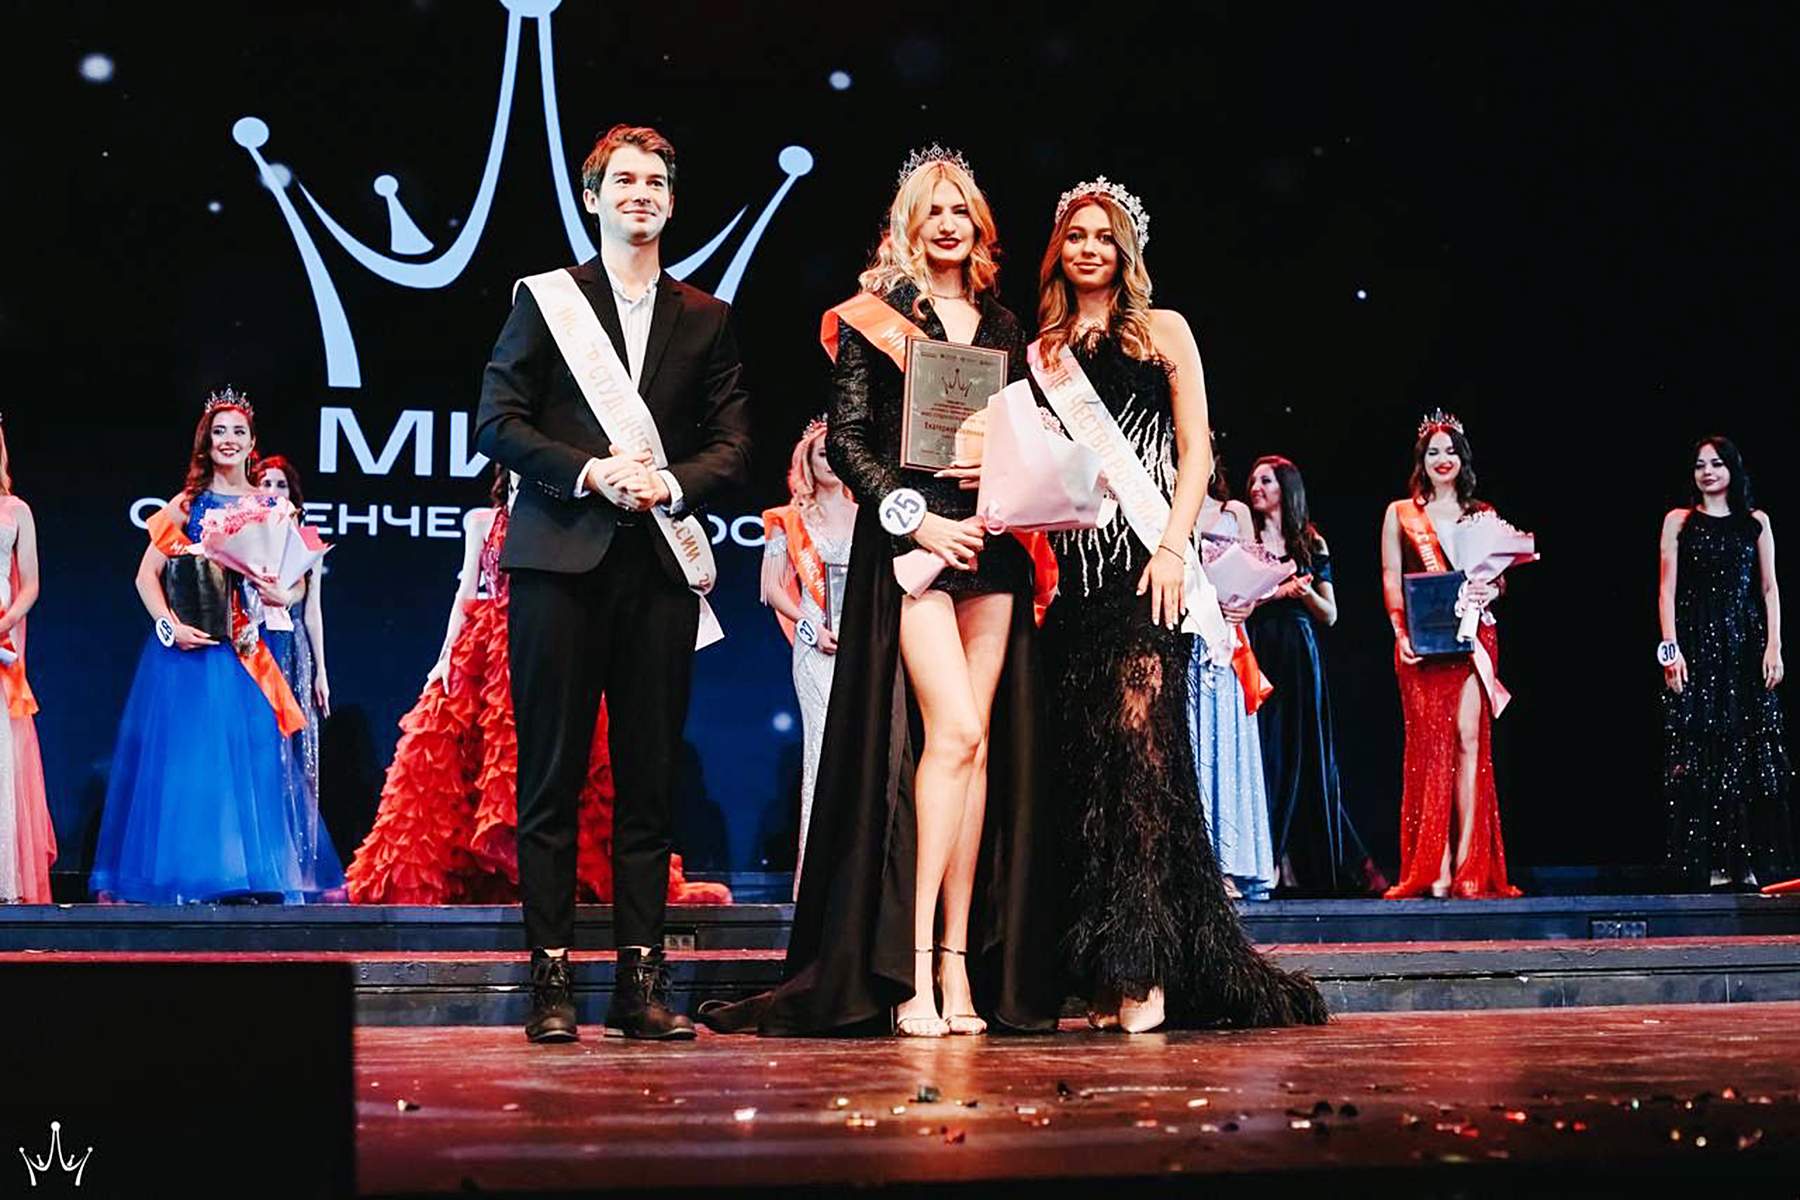 Студентка ВГУЭС получила титулы «Мисс Грация» и «Мисс Дальневосточный федеральный округ» на конкурсе «Мисс и Мистер Студенчество России – 2021»